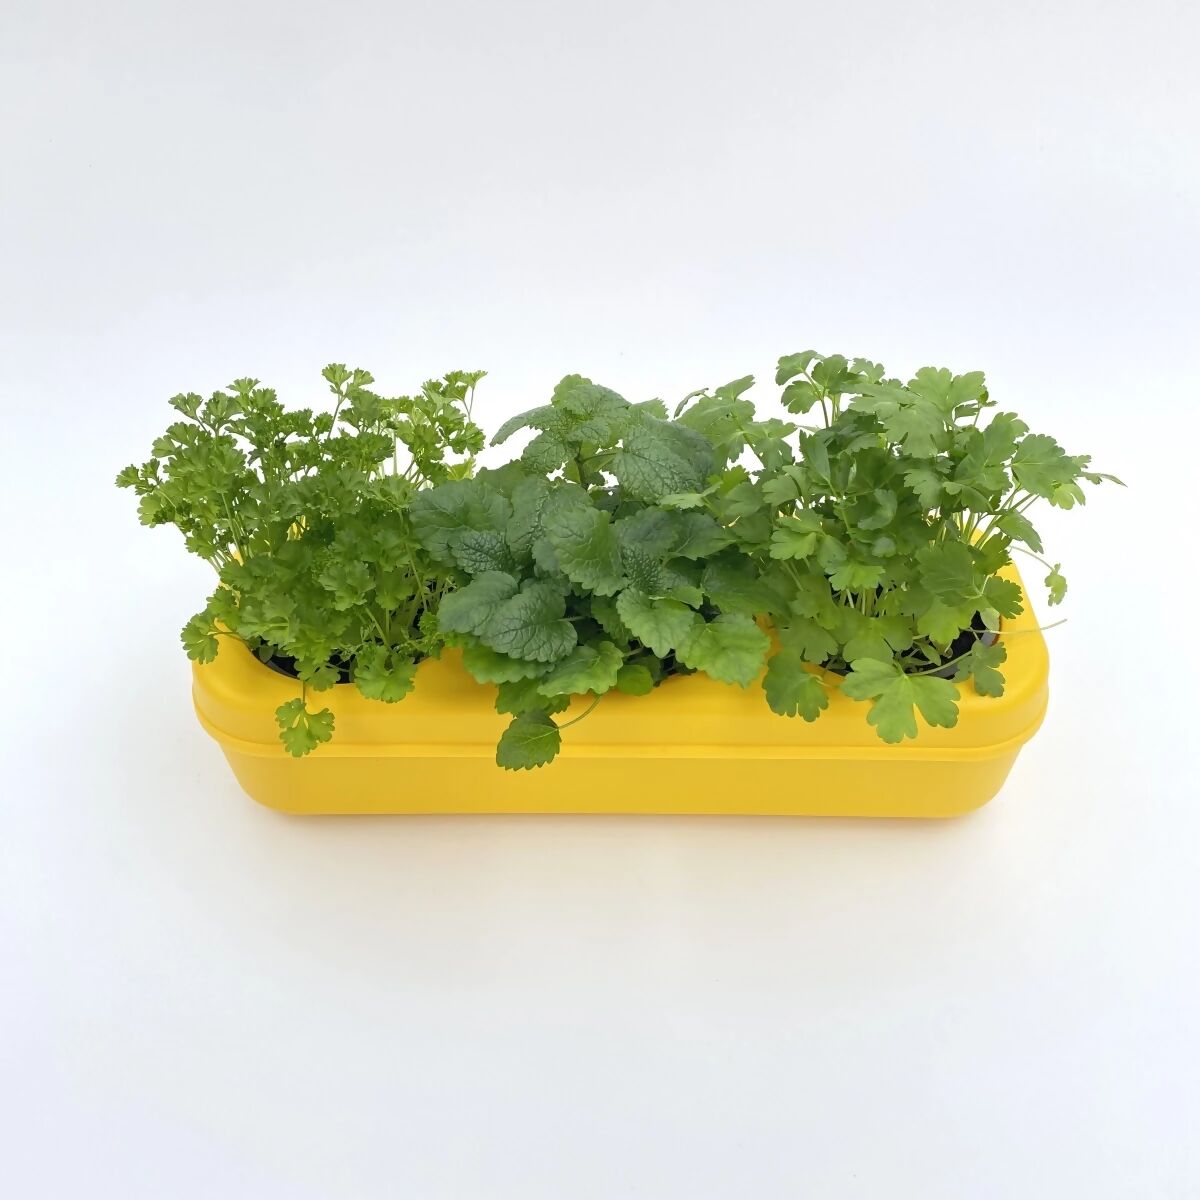 Dreifaches semi-hydroponisches städtisches Gemüsegarten-Set – Gelb  - 0